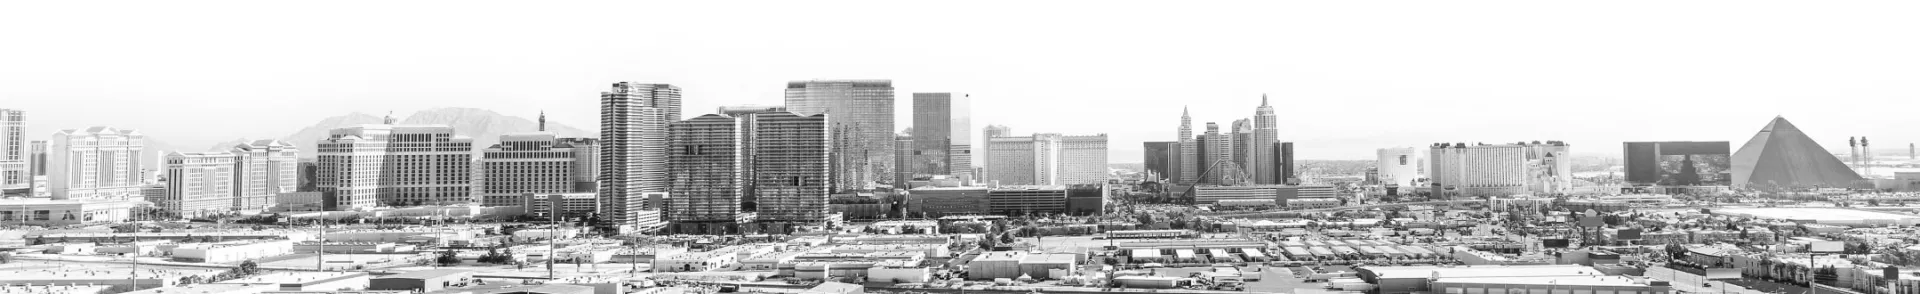 Las Vegas Cityscape